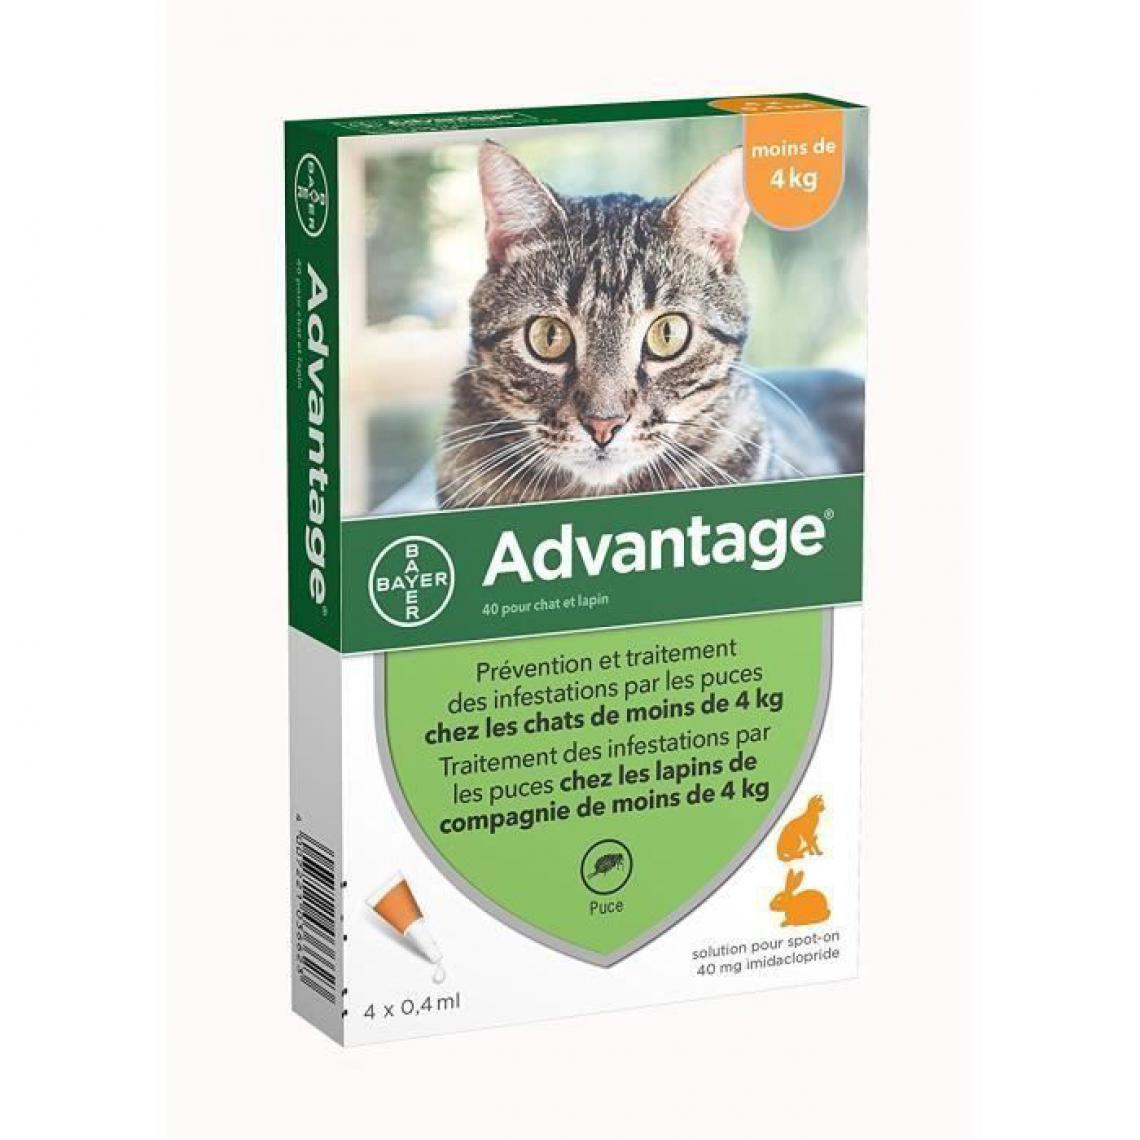 Advantage - ADVANTAGE 40 - 4 pipettes antiparasitaires - Pour chat et lapin de moins de 4kg - Anti-parasitaire pour chat